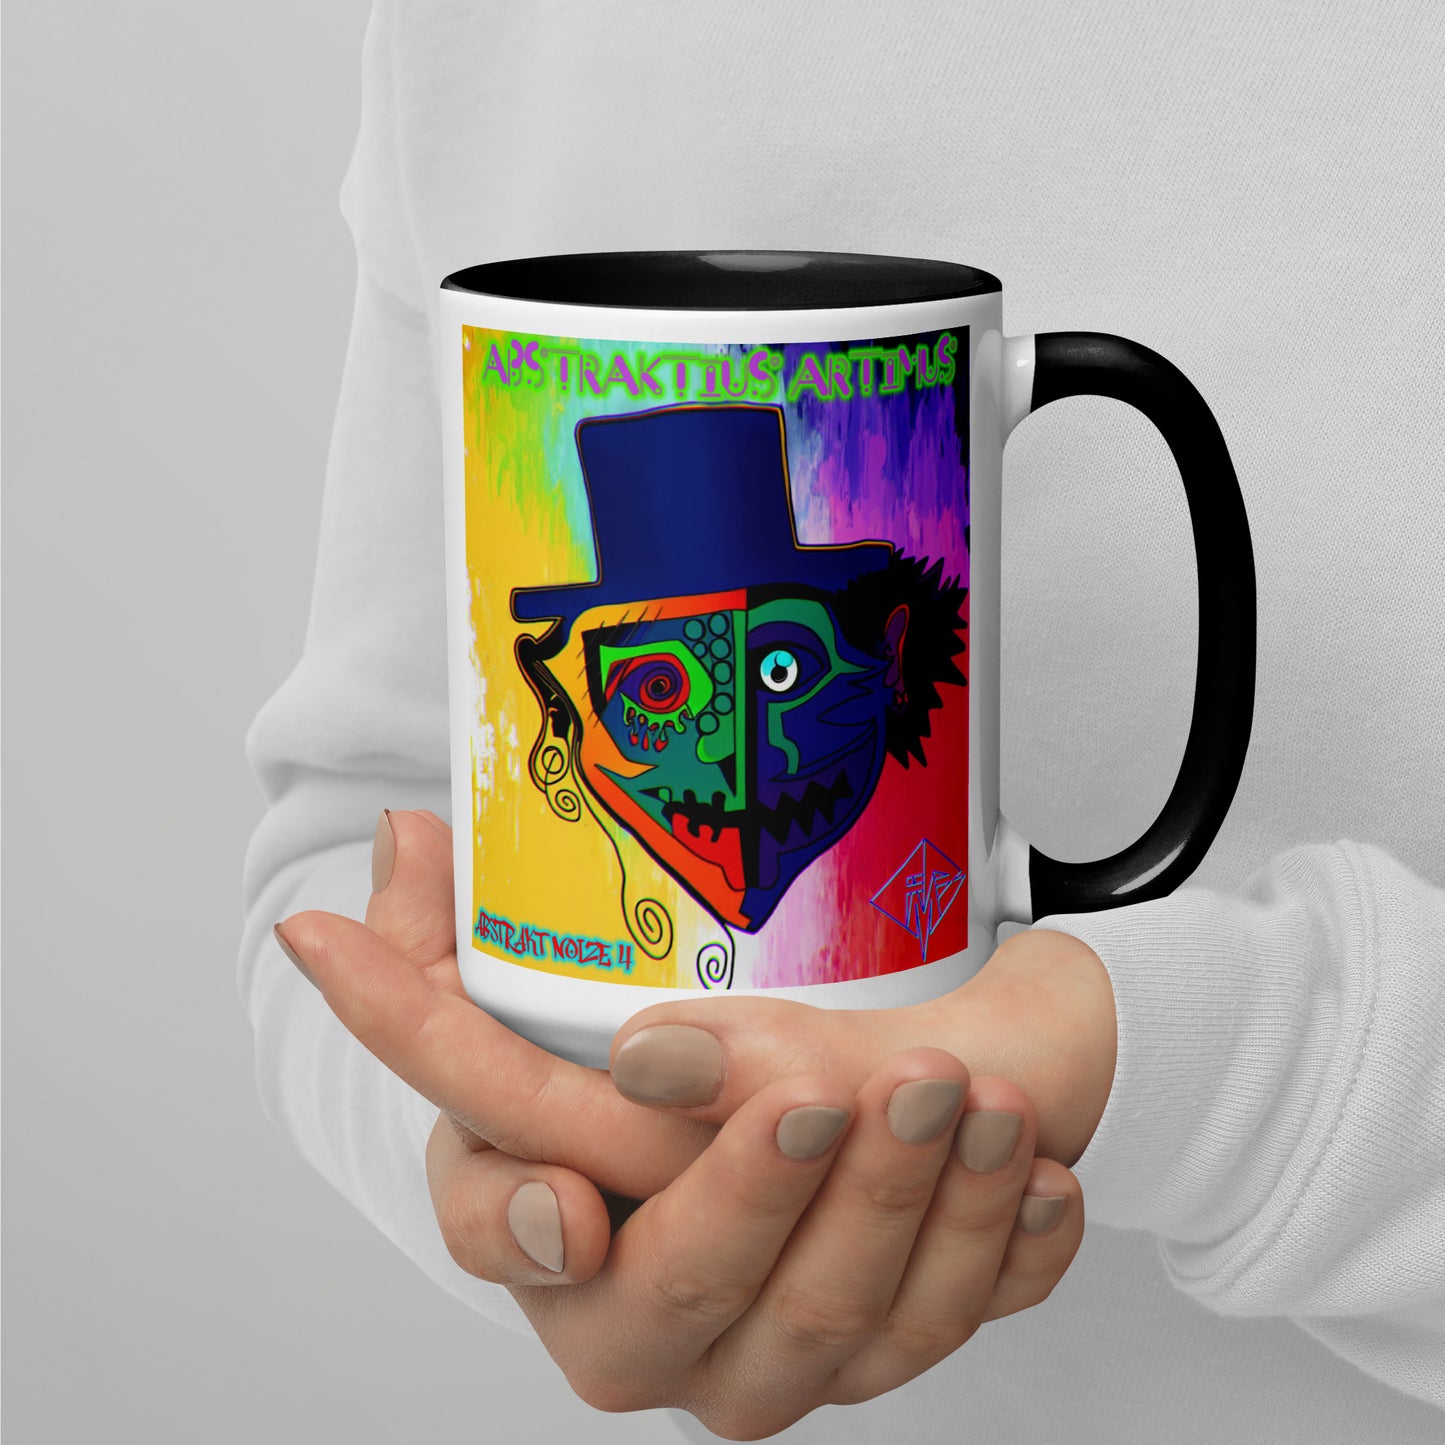 Abstraktius Artimus - Abstrakt Noize 4 Mug With Color Inside